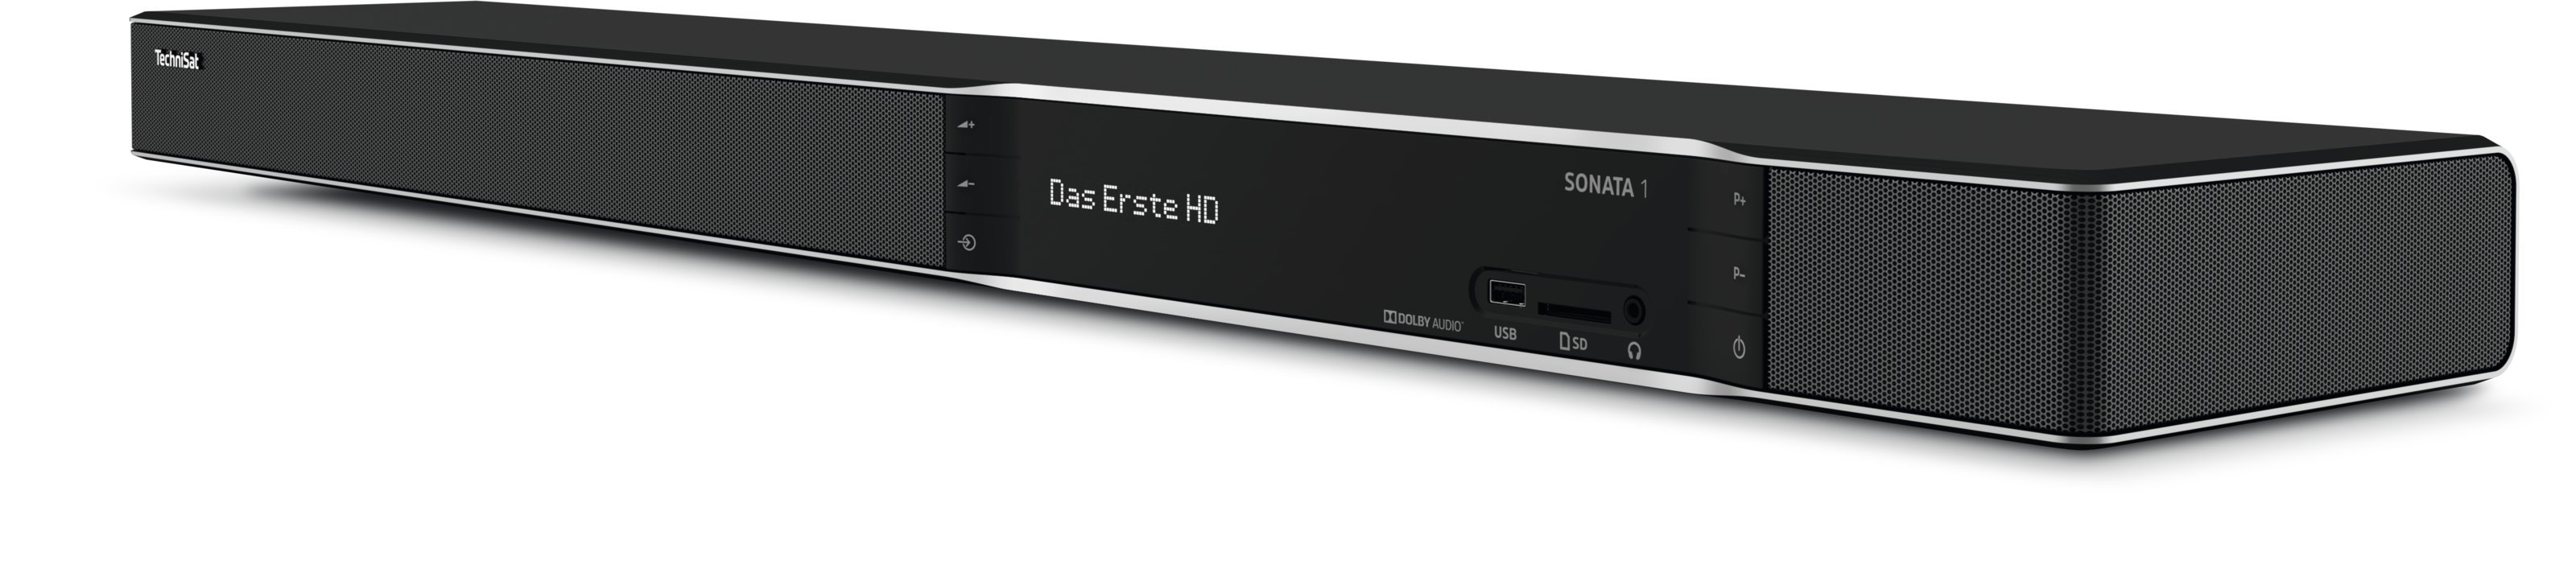 DVB-T2 1 PVR-Funktion, Receiver DVB-T, TECHNISAT schwarz) SONATA (H.264), (HDTV, UHD DVB-C2, DVB-T2 DVB-S2, (H.265), Twin Tuner,